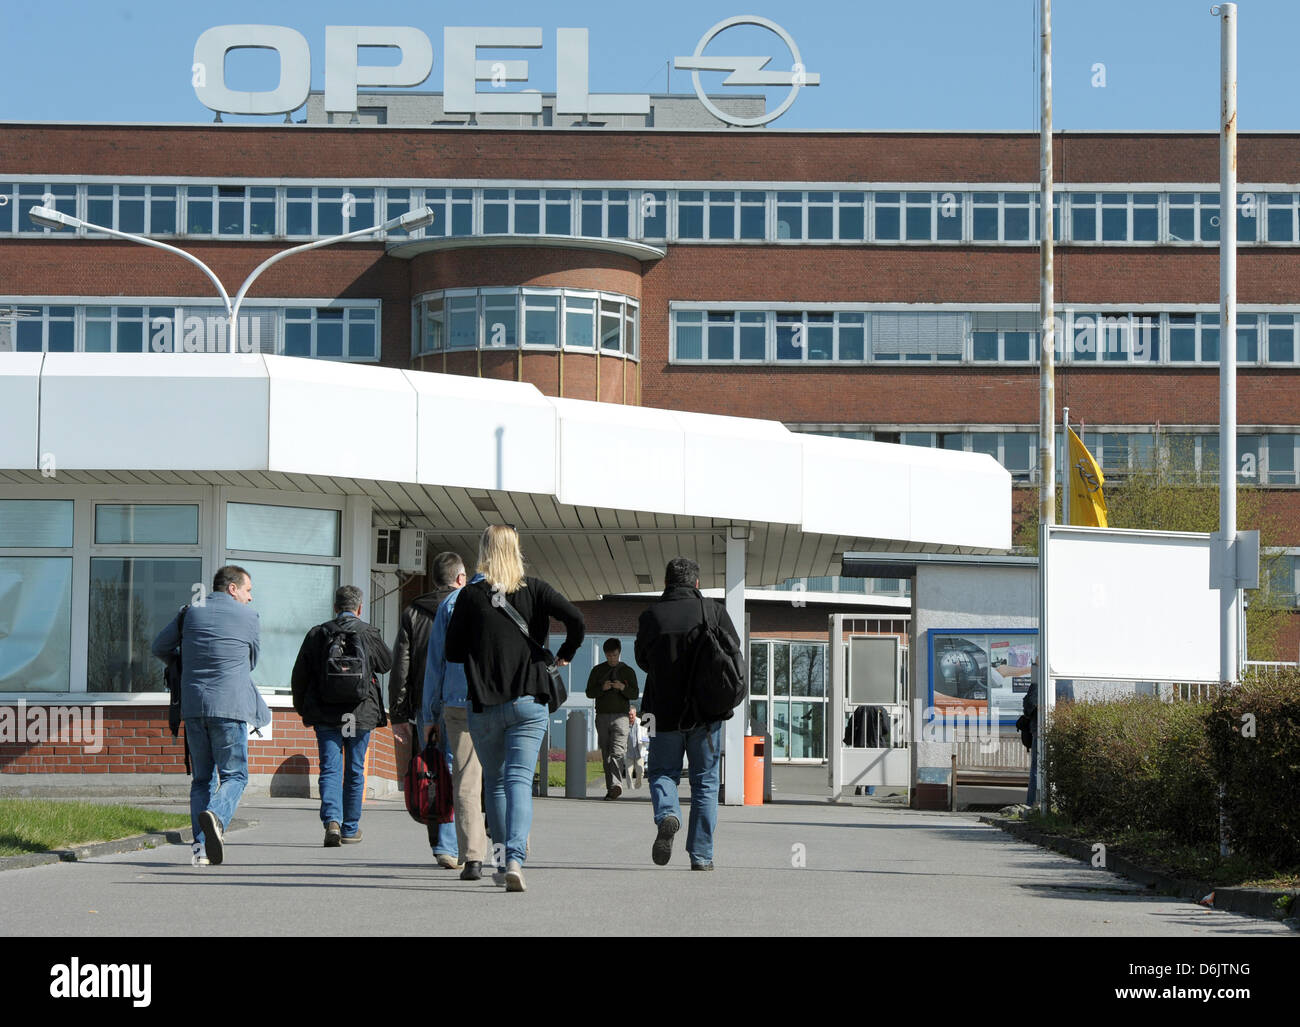 I collaboratori a immettere la Opel stabilimento di Bochum, Germania, 26 marzo 2012. Opel presidente Stracke ha rehected indiscrezioni su imminente chiusure di stabilimenti Opel in Europa a causa di scarsa convenienza economica. Foto: CAROLINE SEIDEL Foto Stock